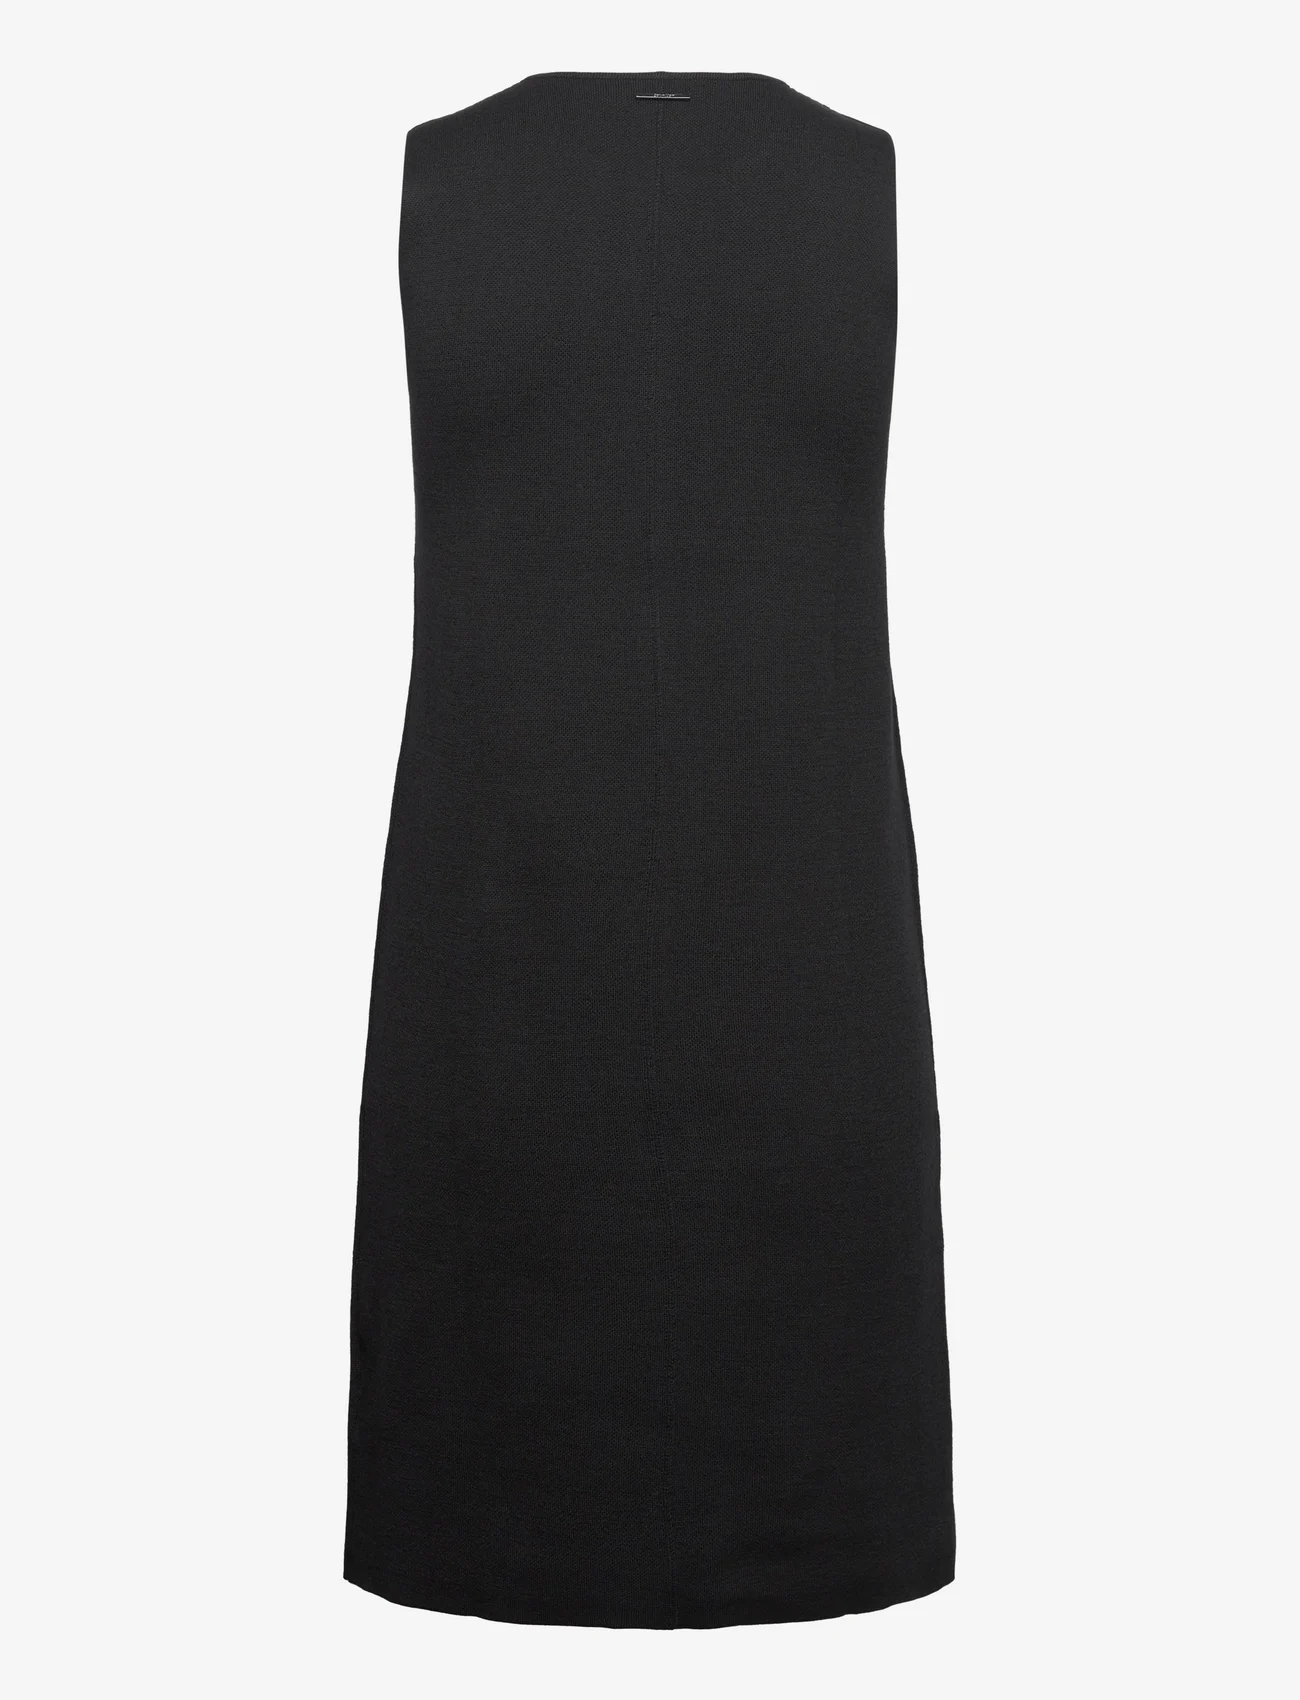 Calvin Klein - EXTRA FINE WOOL SHIFT DRESS - stickade klänningar - ck black - 1